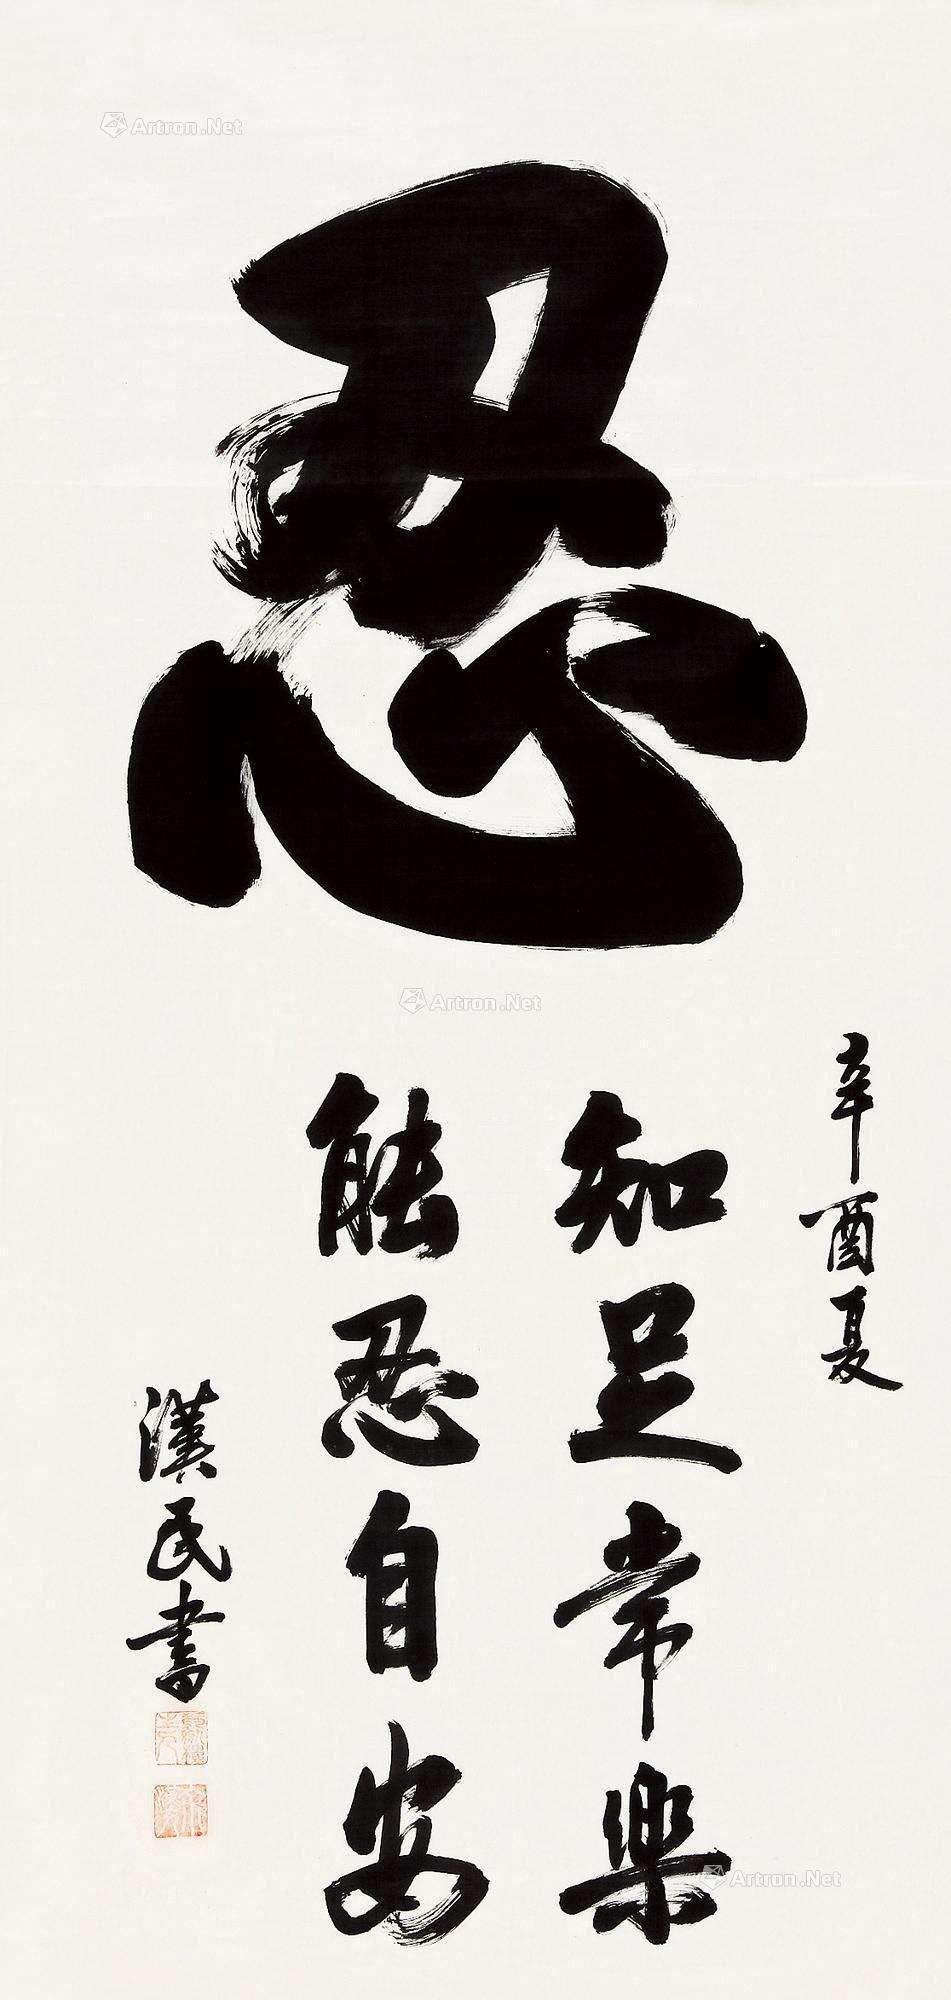 中国传统文化推出去之汉字"忍辱负重"的"忍"